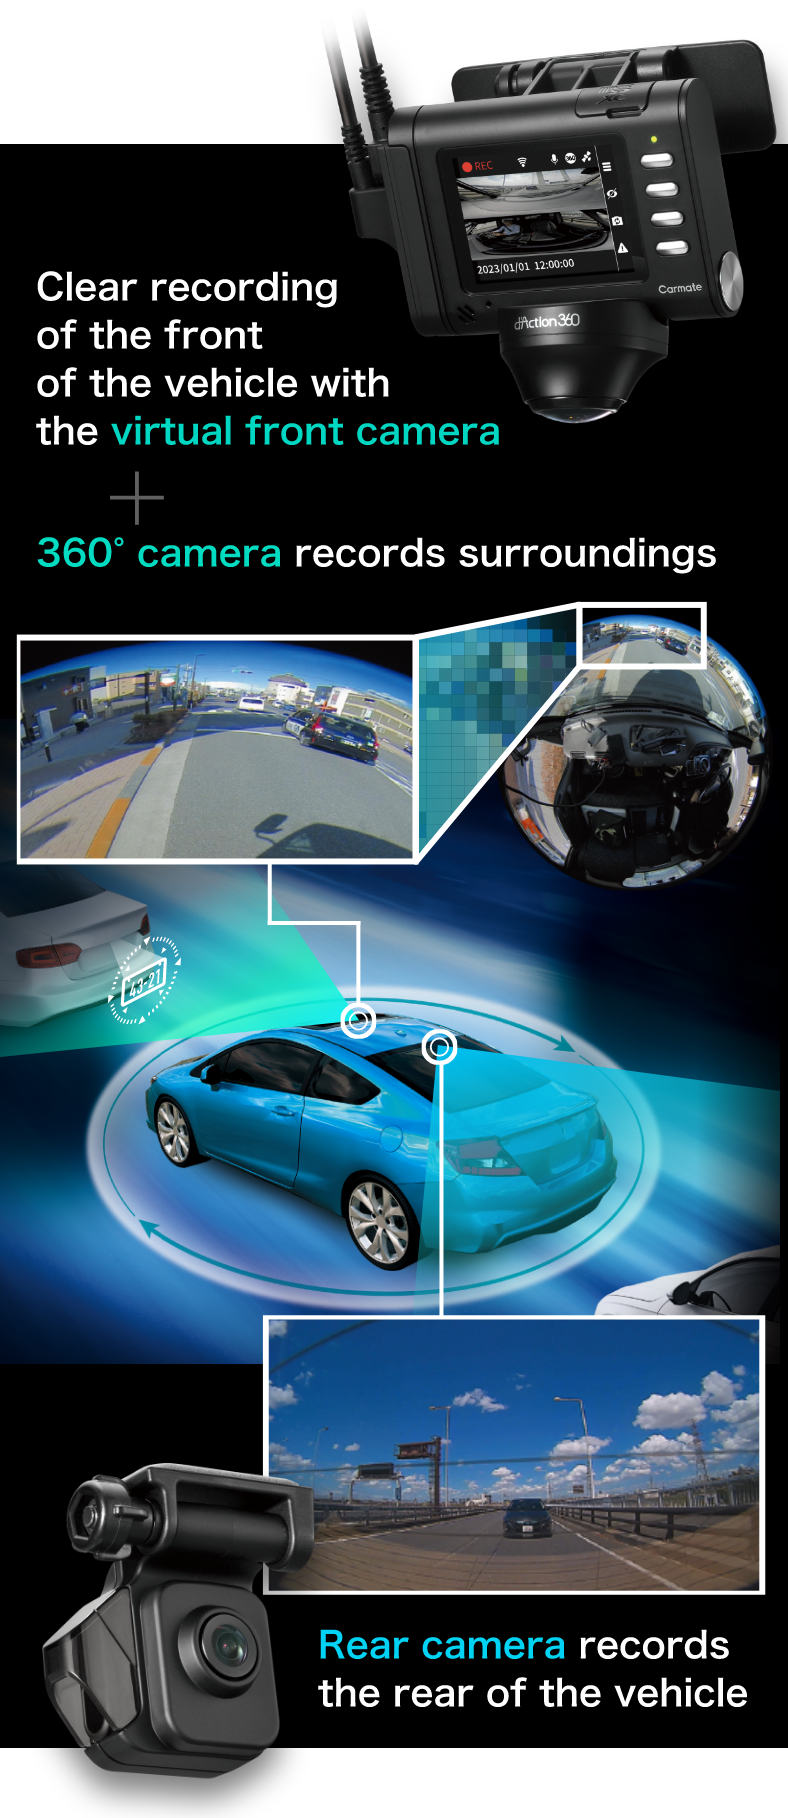 バーチャルフロントカメラで車両前方をクリアに記録+360°カメラで周囲を記録 リヤカメラであおり運転を記録